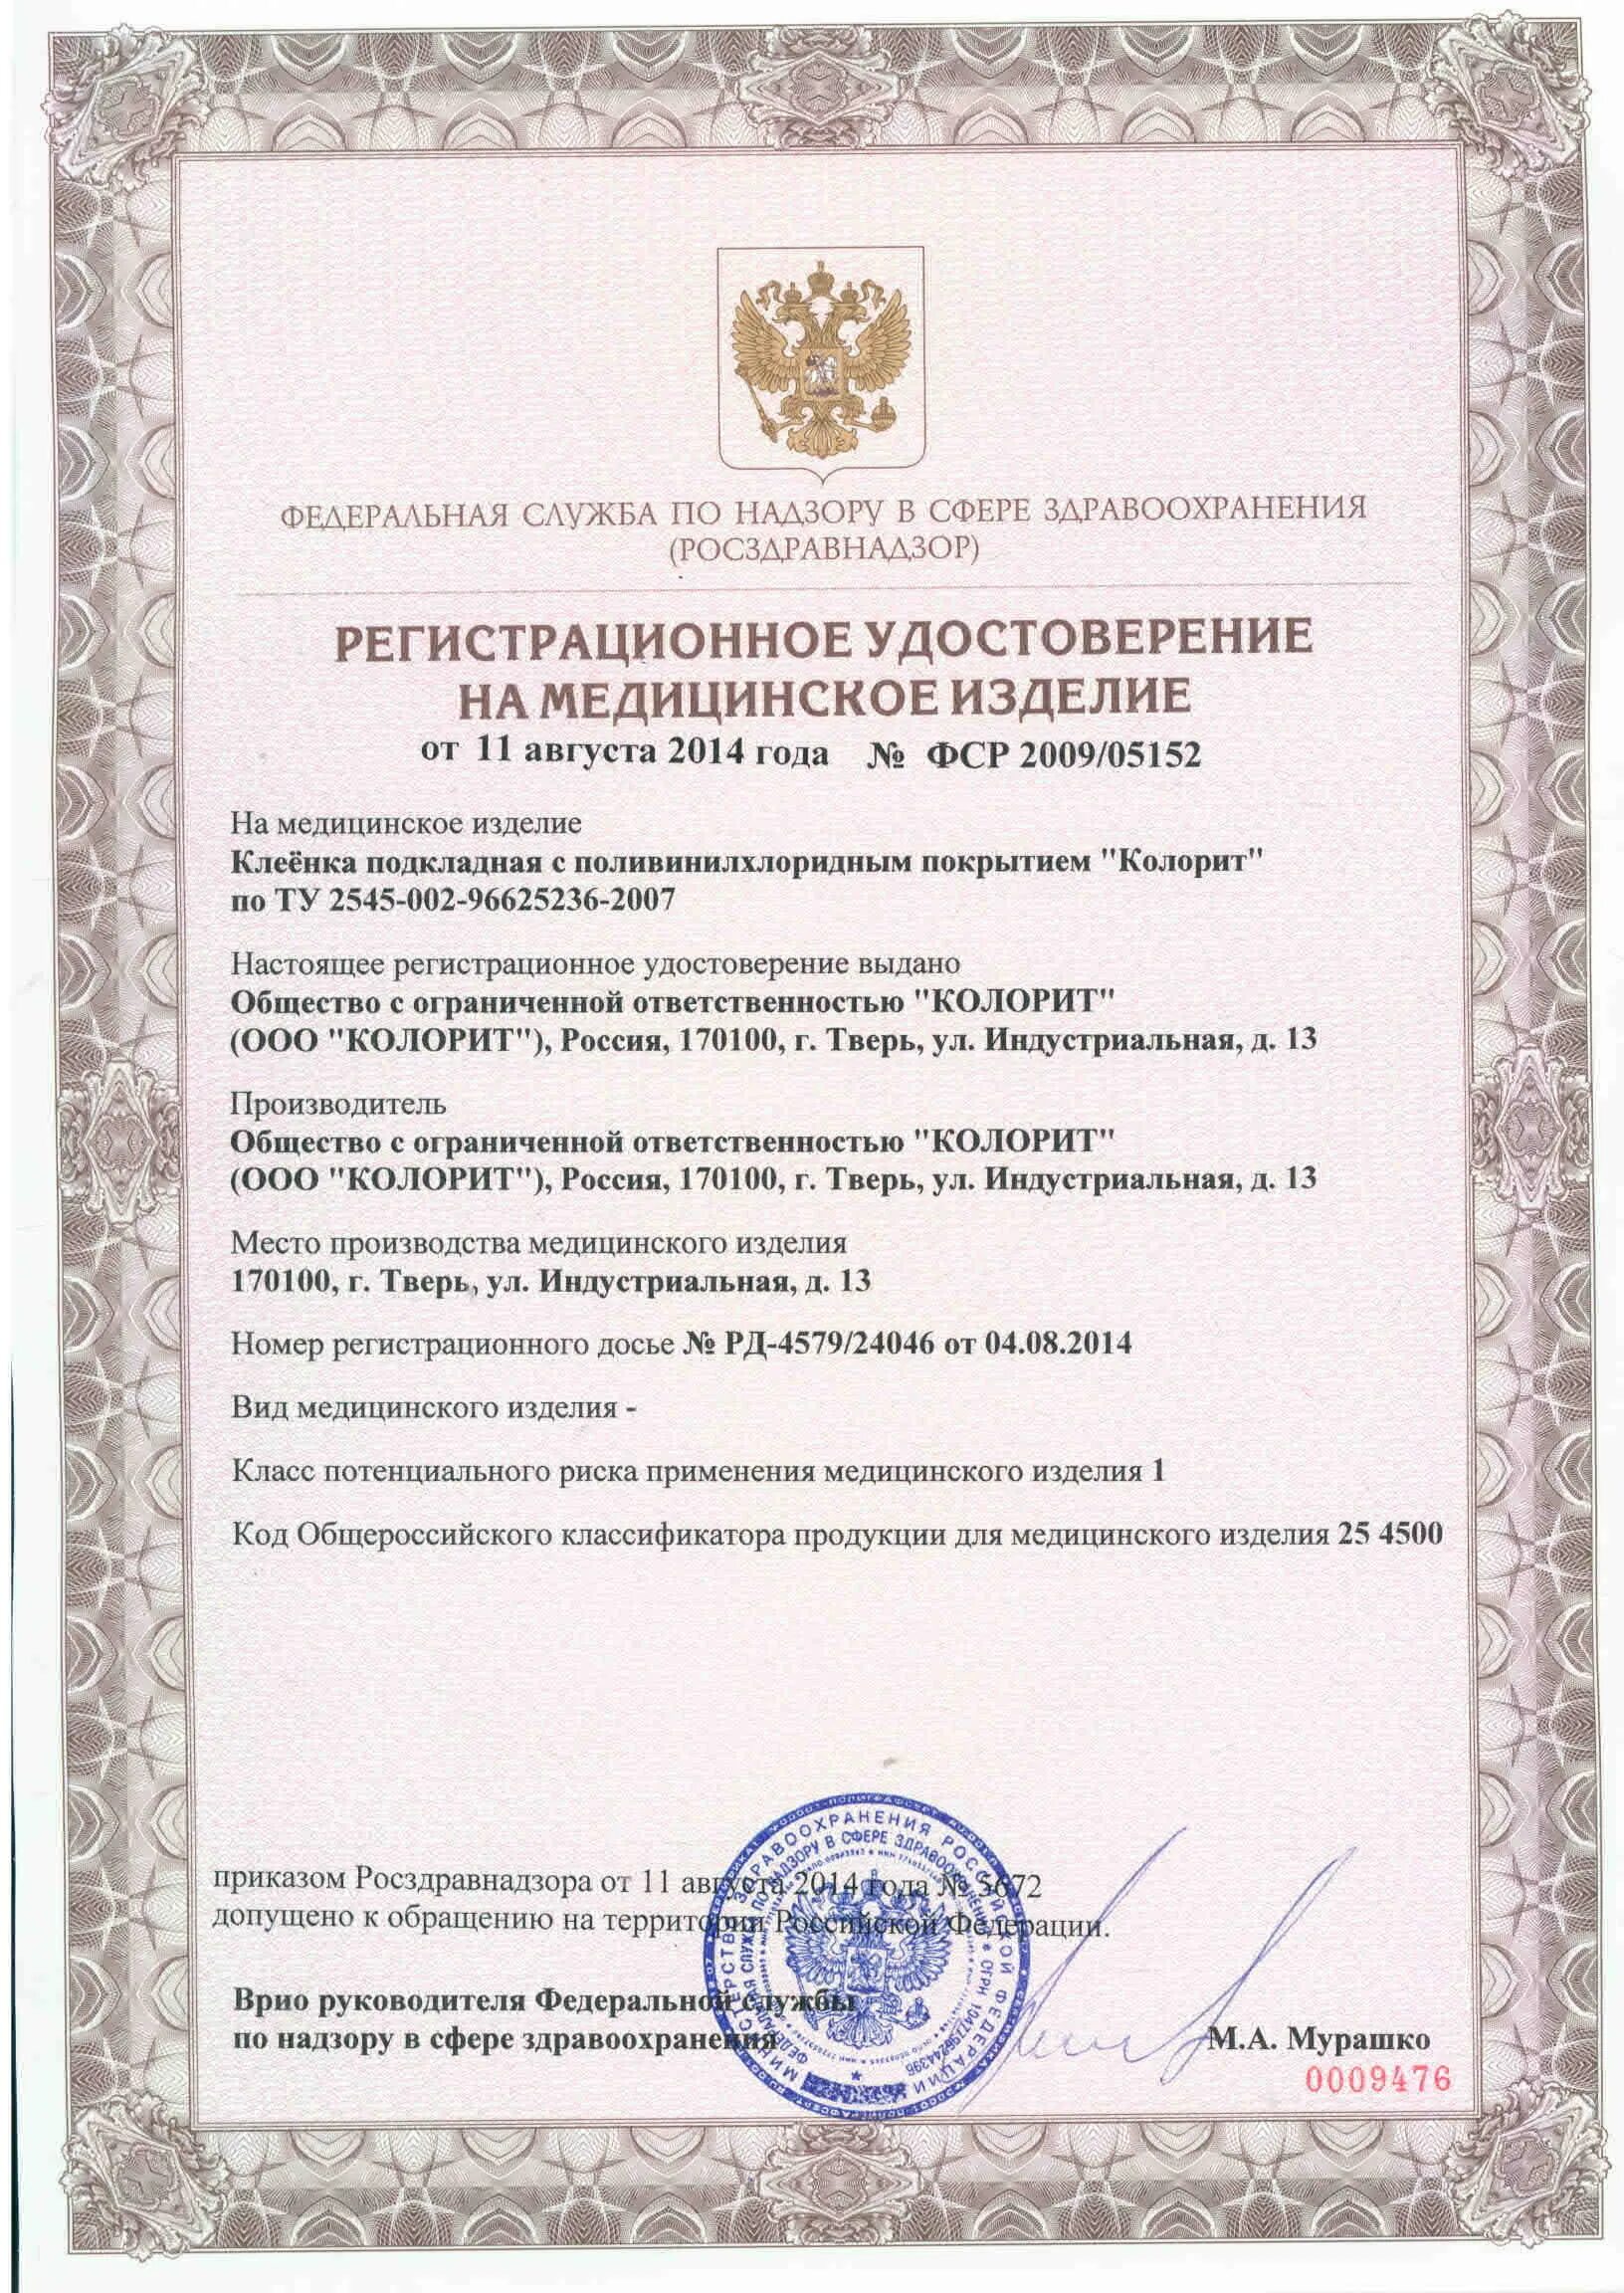 Рзн 2015. Сертификат на медицинское изделие. Регистрационное на медицинское изделие.